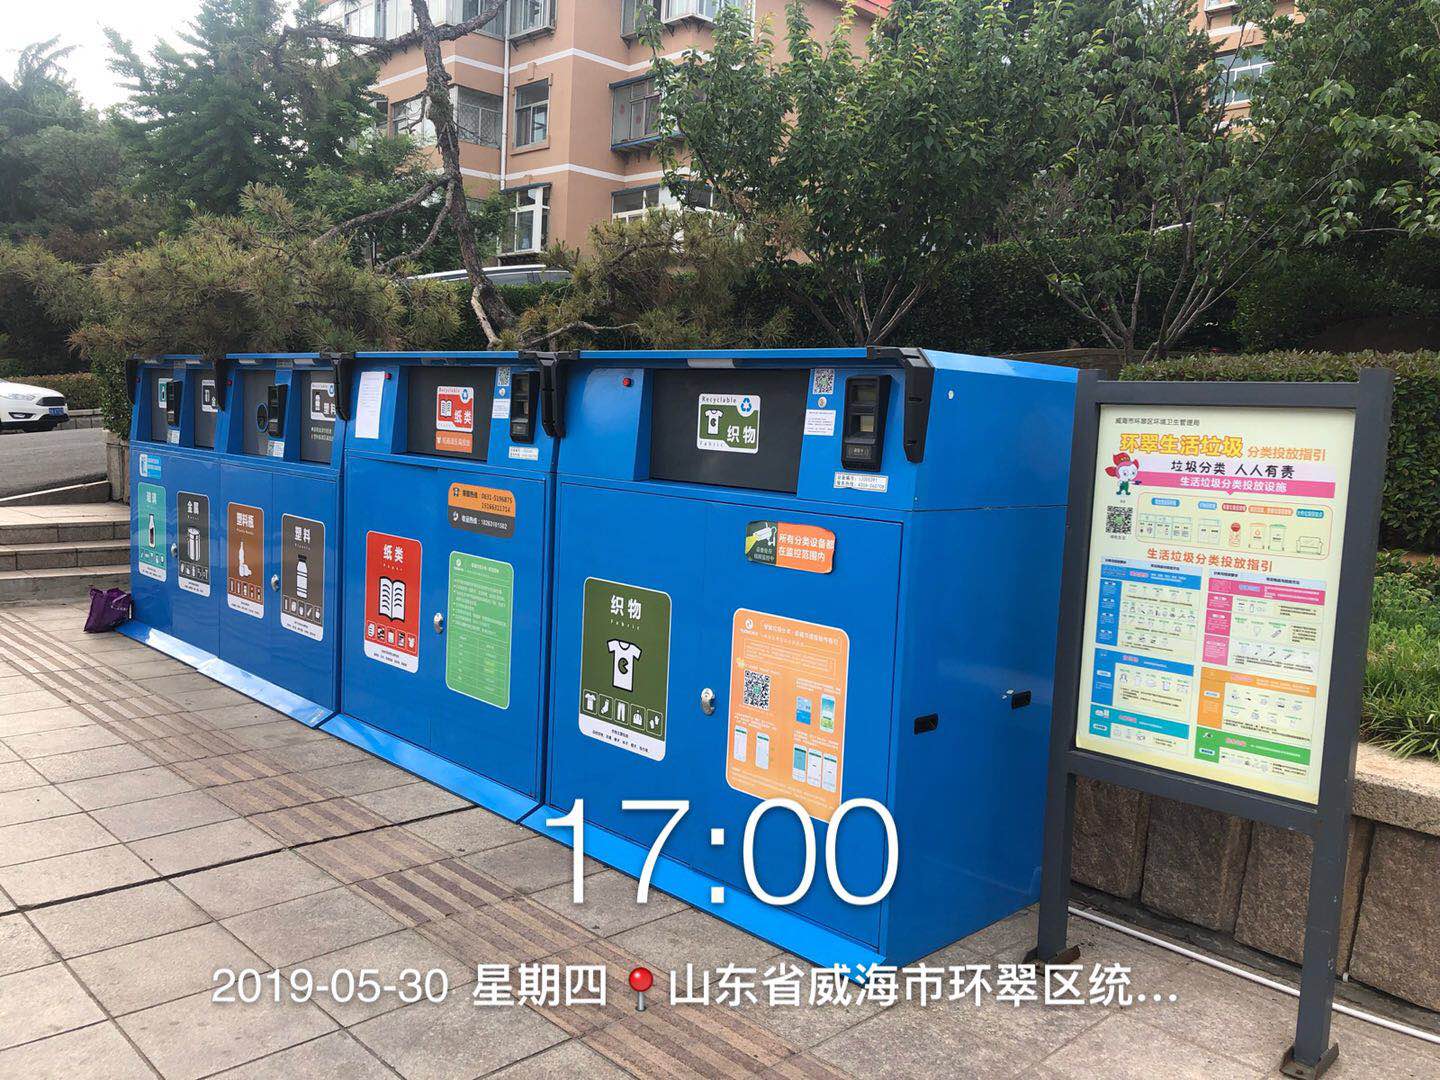 垃圾分类垃圾桶,郑州垃圾分类垃圾桶,垃圾分类垃圾桶功能,郑州垃圾分类垃圾桶功能